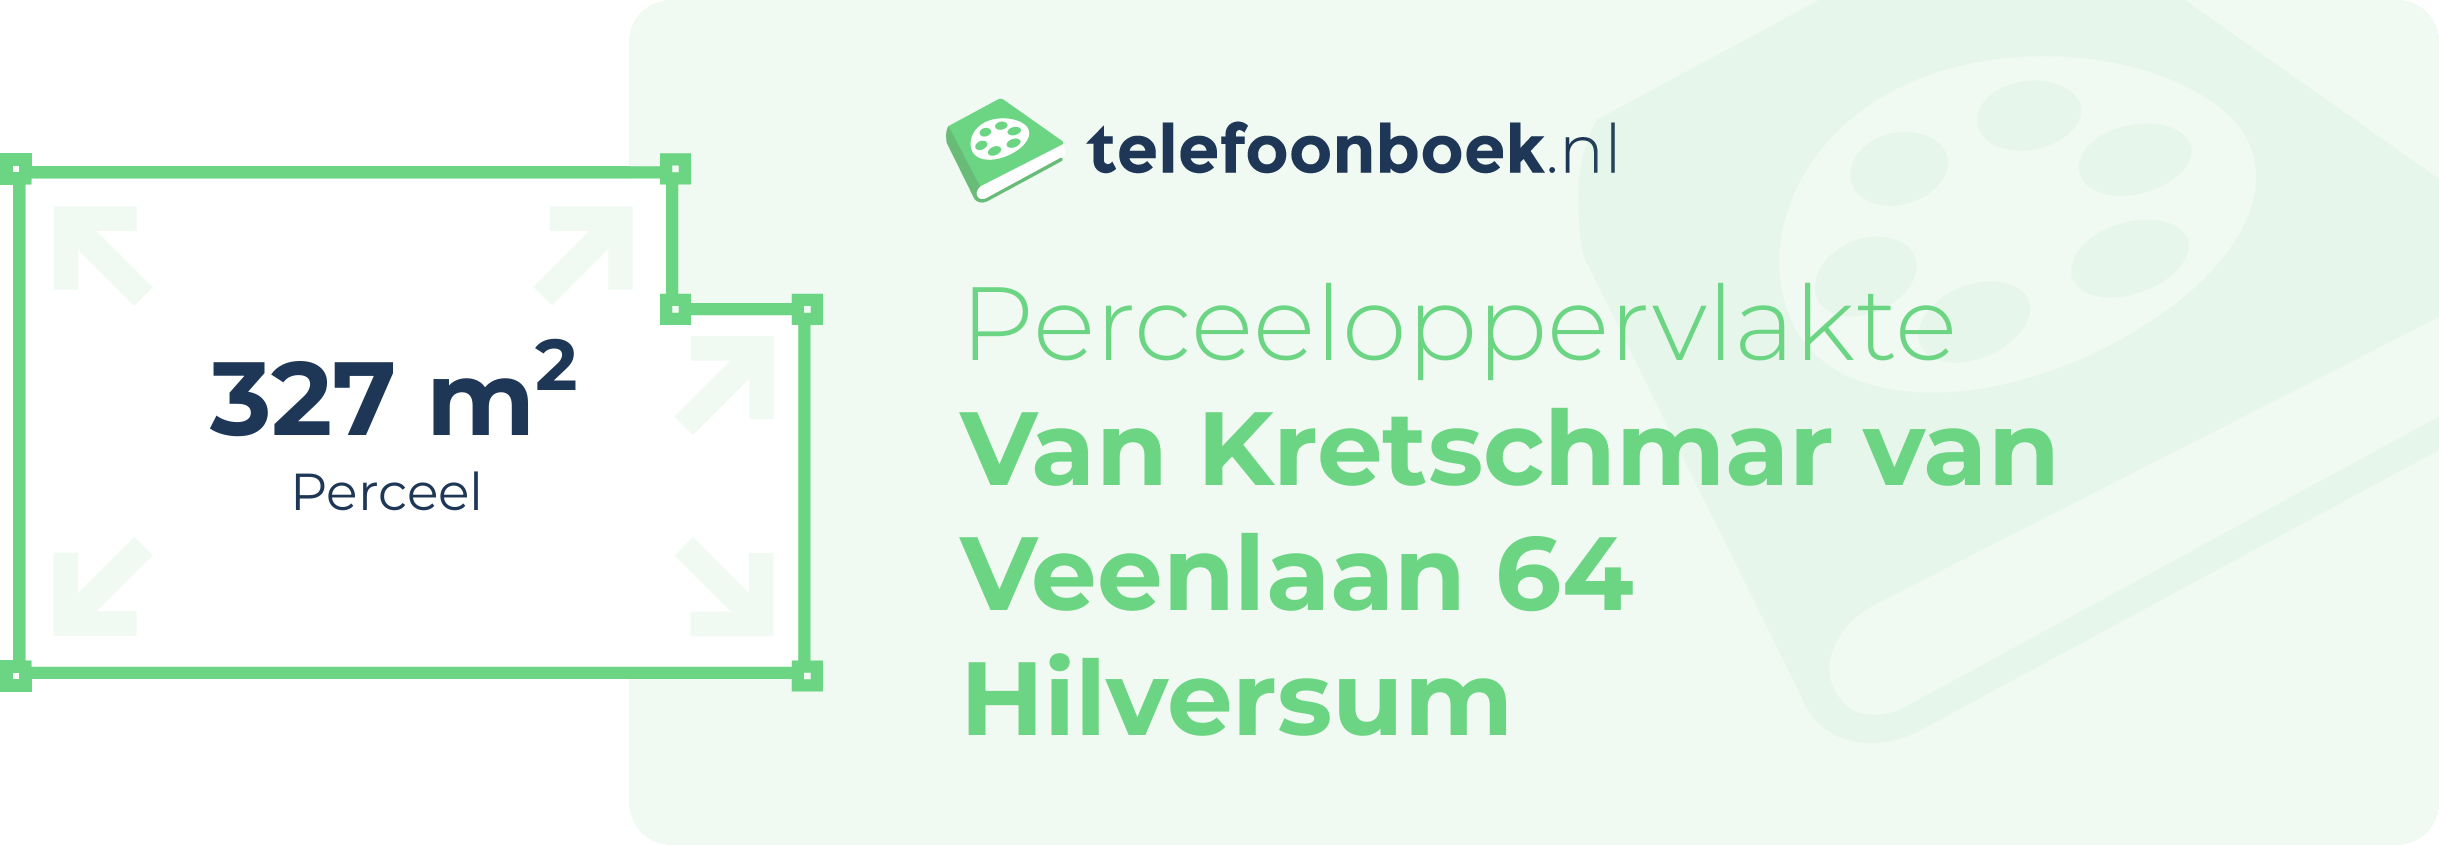 Perceeloppervlakte Van Kretschmar Van Veenlaan 64 Hilversum